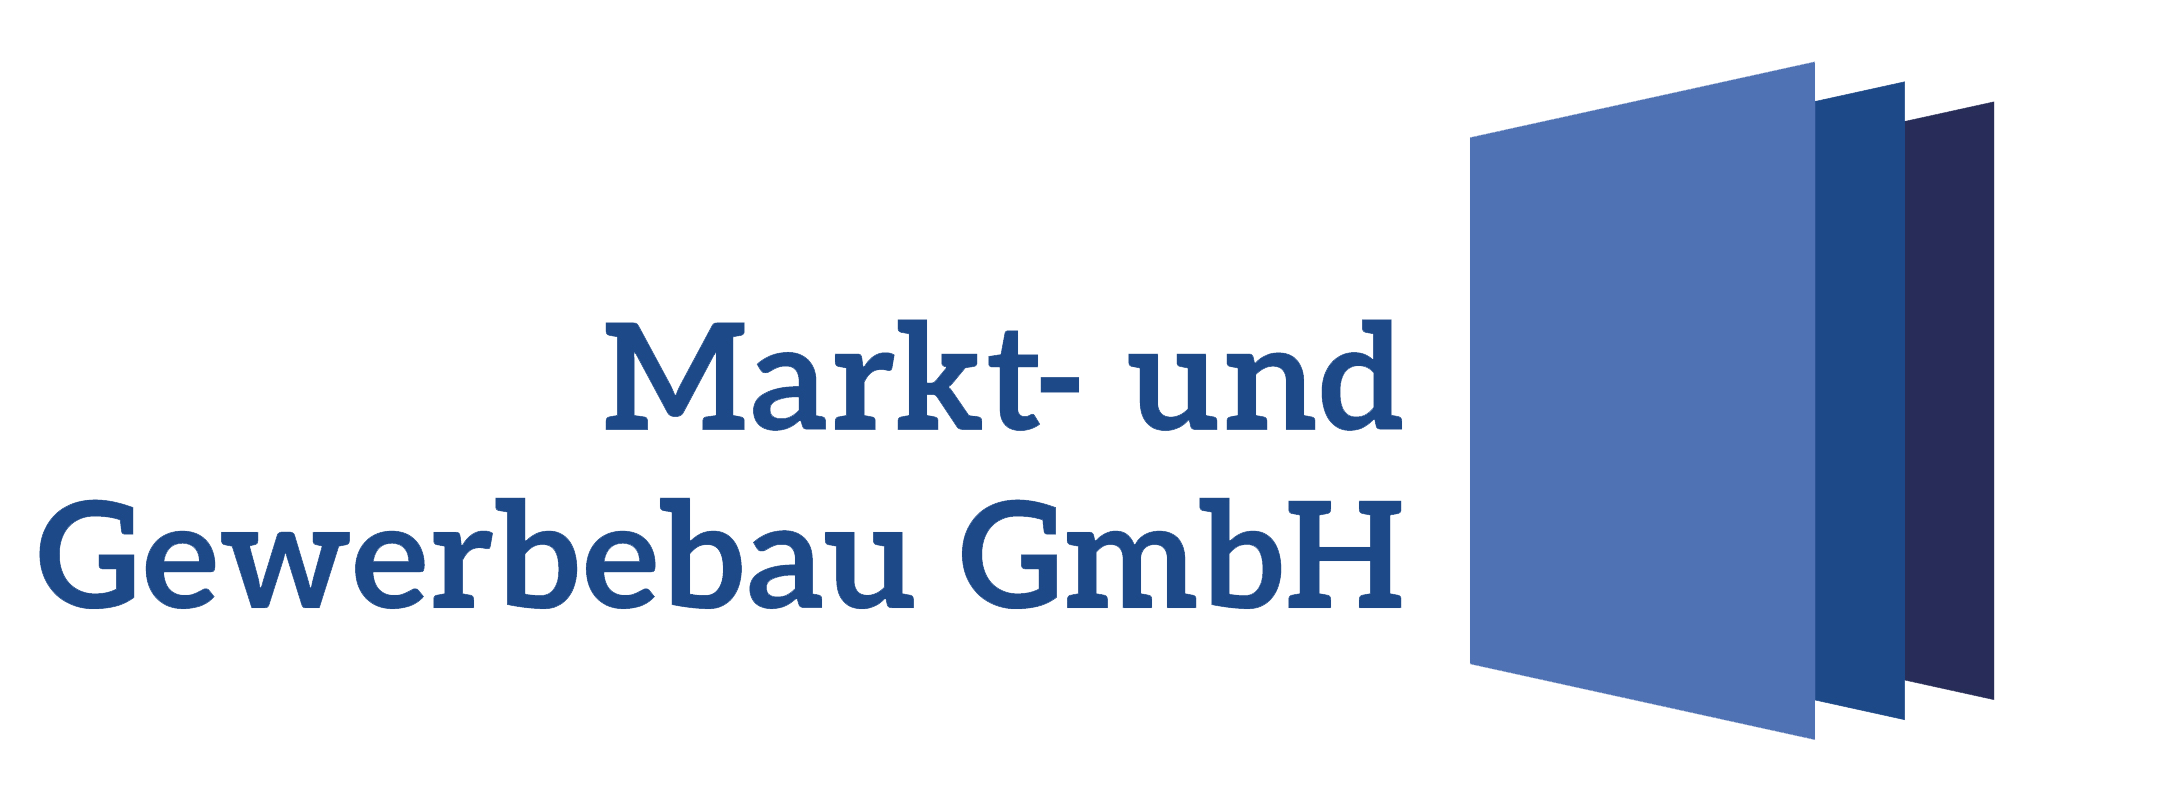 Markt und Gewerbebau GmbH